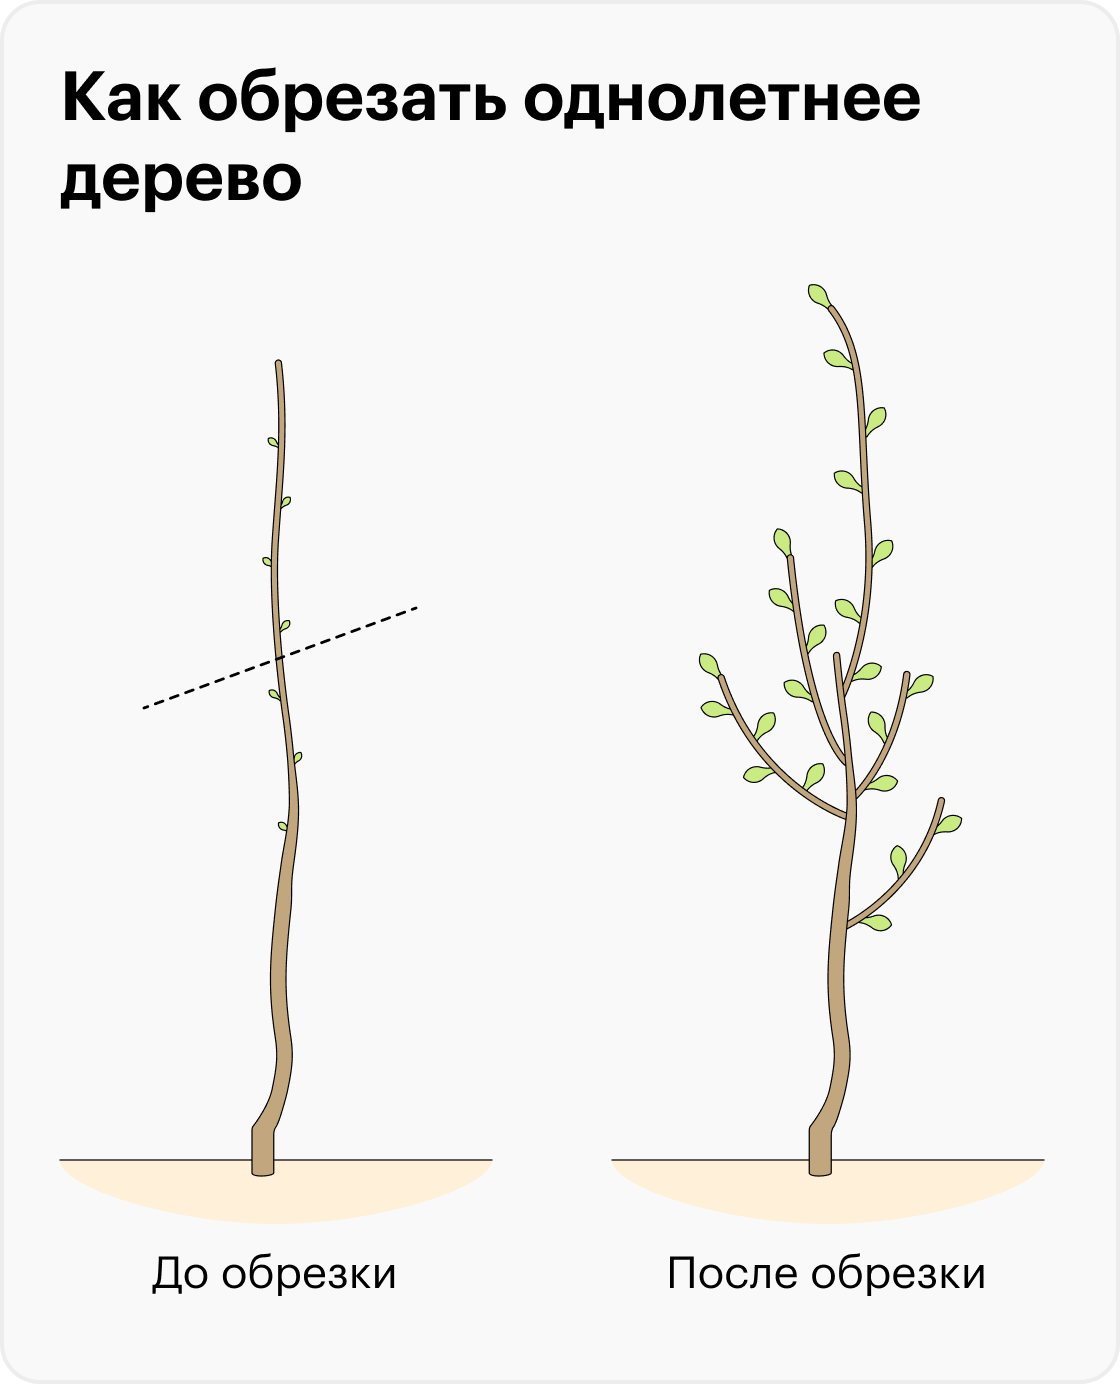 Пример, когда однолетнее дерево надо обрезать (слева). На рисунке справа показано, как оно может расти после обрезки